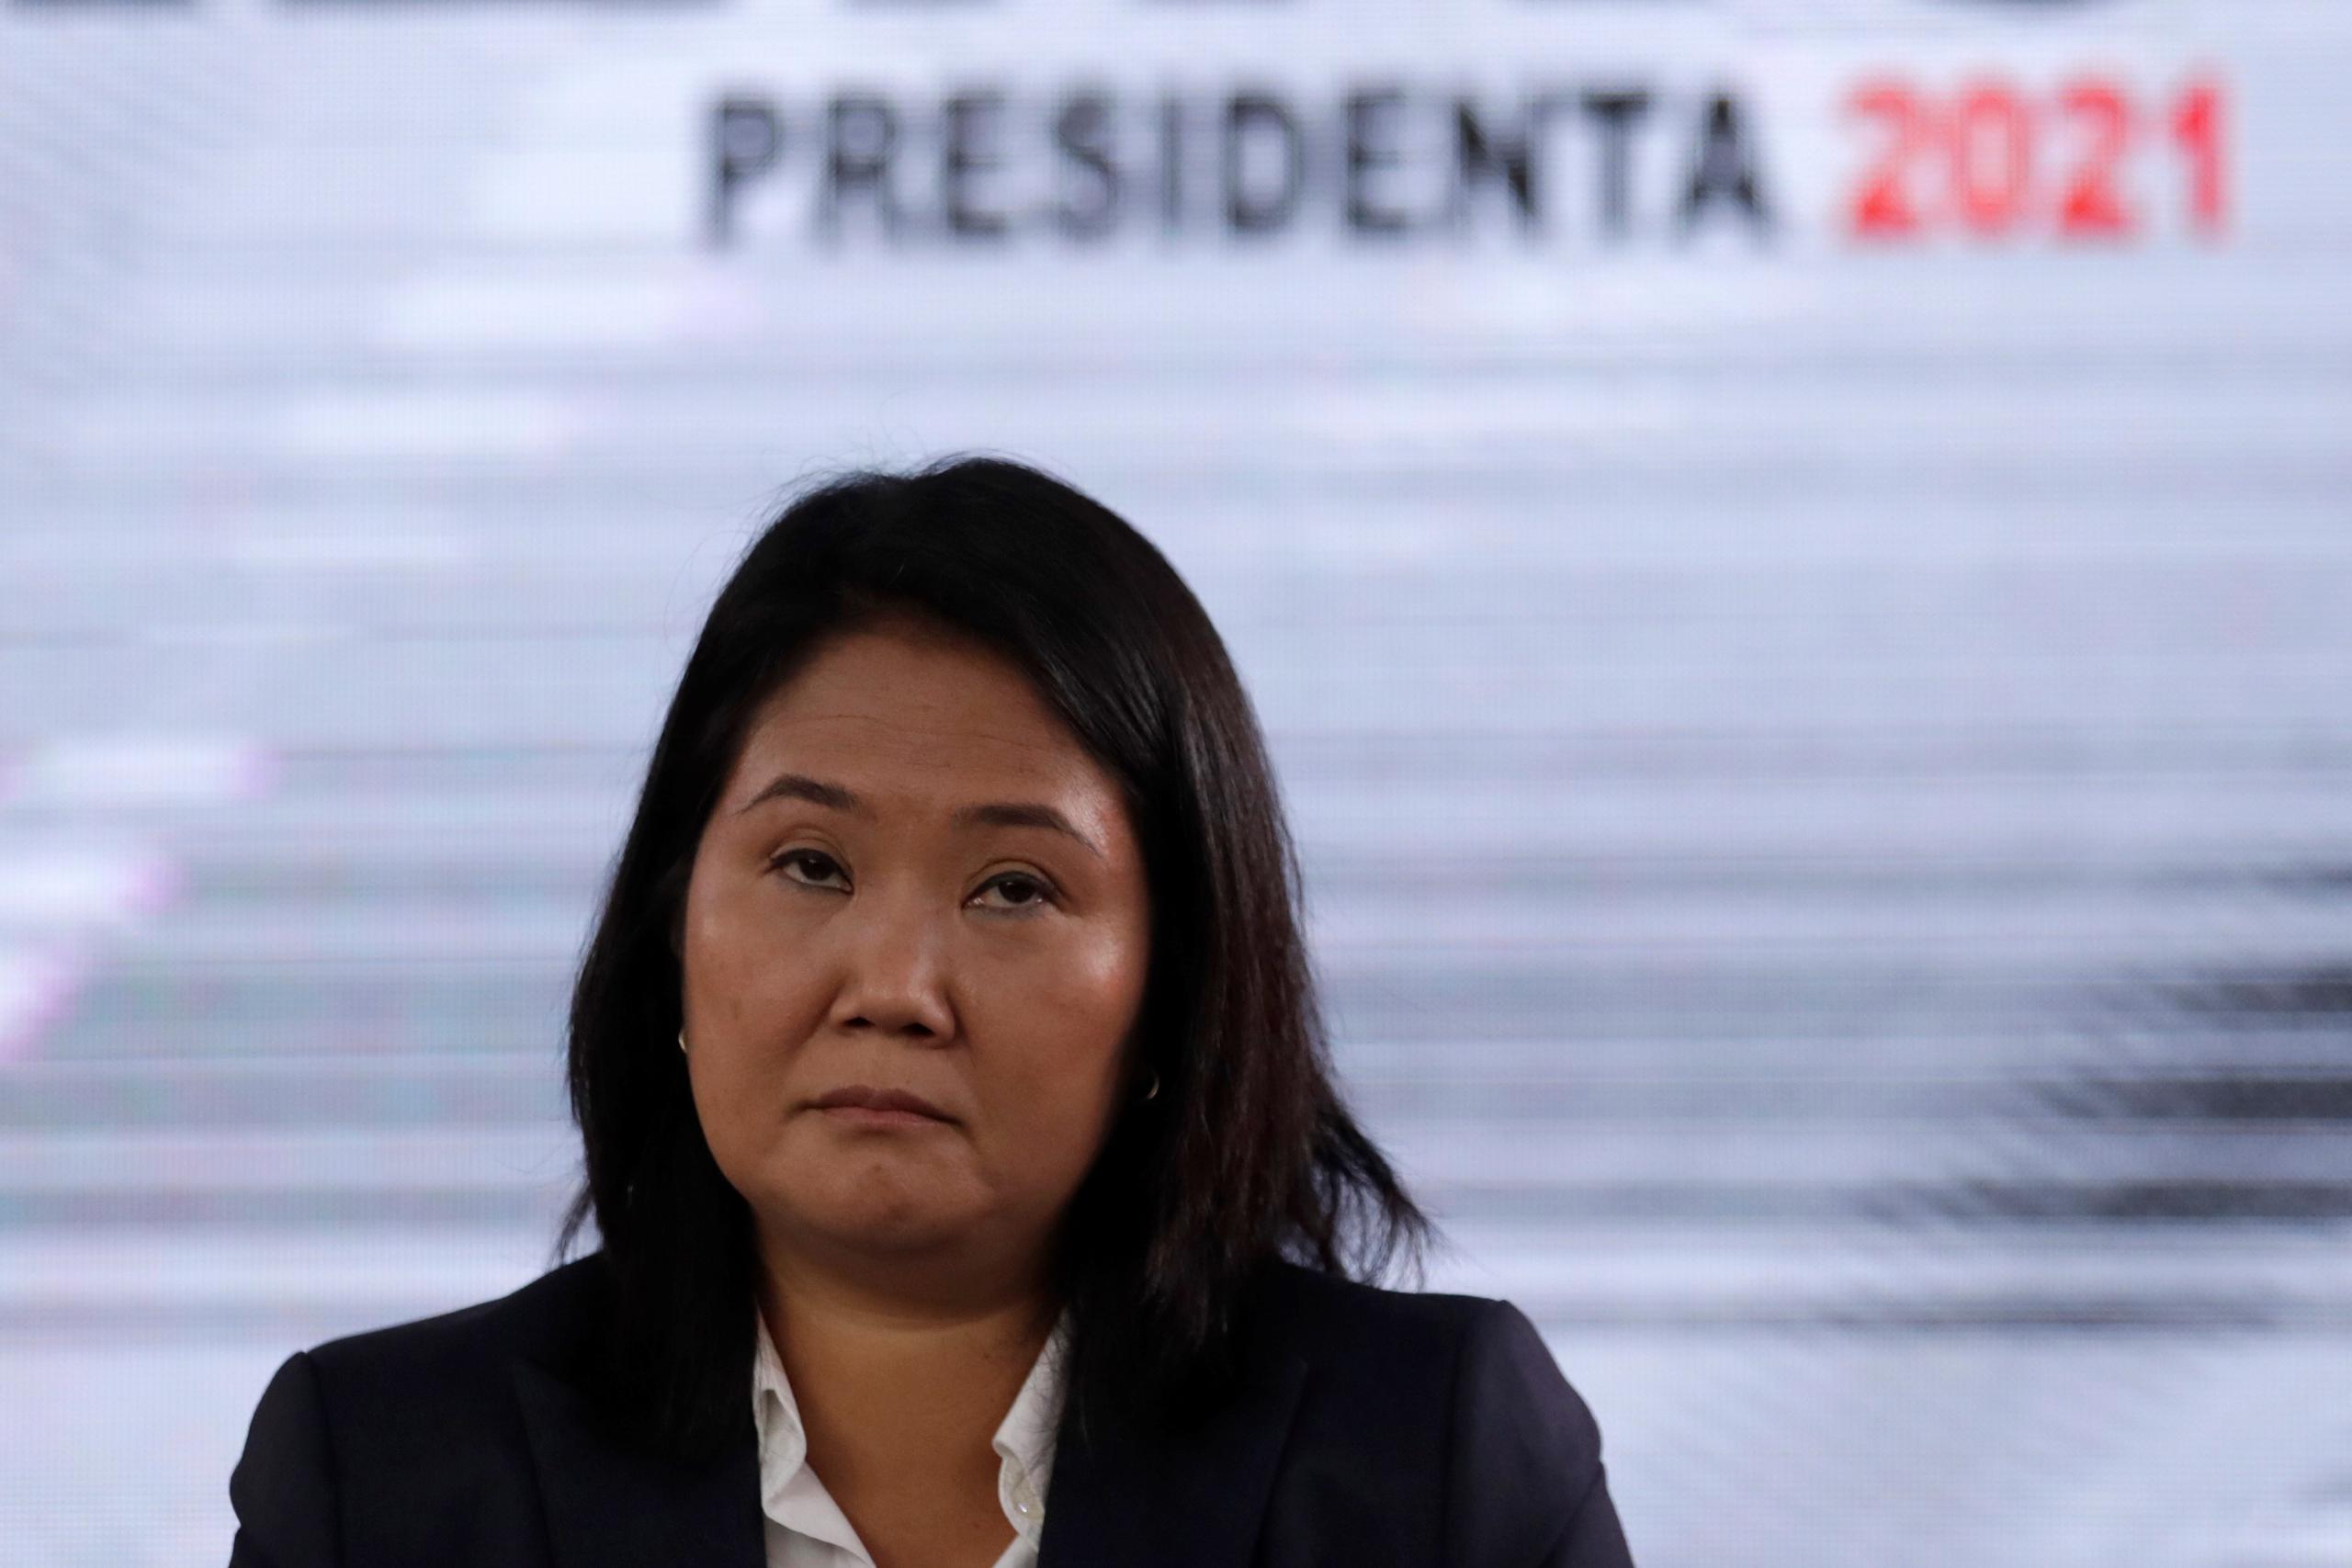 La derechista Fujimori no ha aceptado su derrota luego que, tras el conteo de todas las actas electorales durante la segunda vuelta presidencial del 6 de junio, el izquierdista Pedro Castillo terminó primero con 50.125% y 44,058 votos de ventaja.